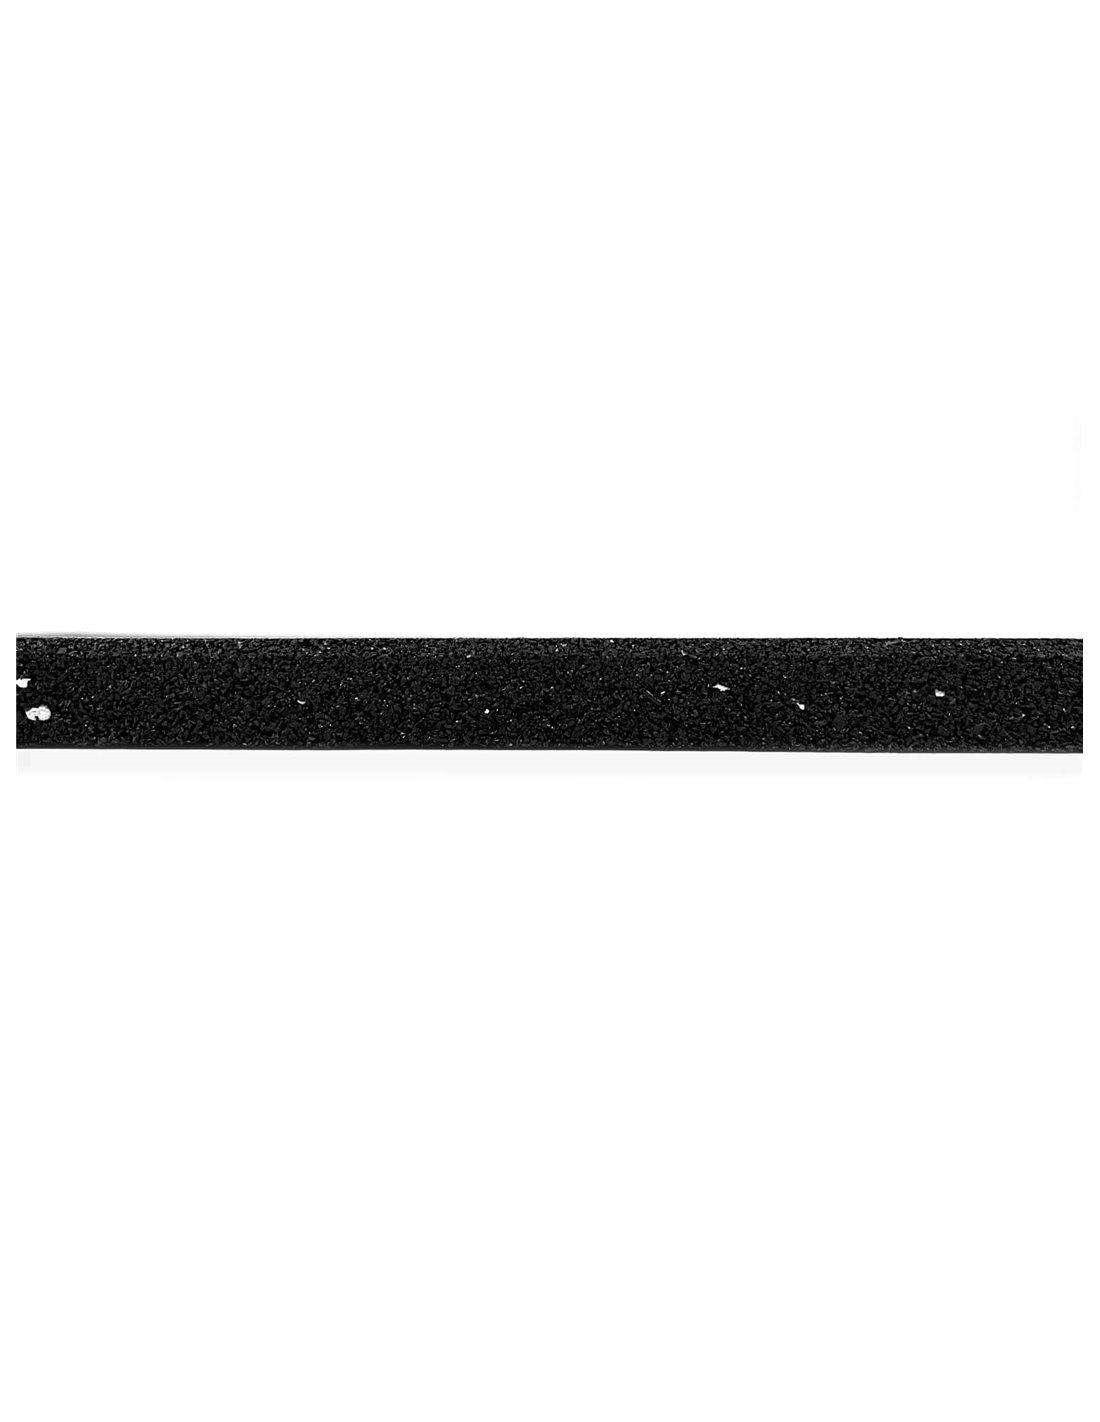 Suelo de gimnasio - Loseta de Caucho 50x50 cm. 15mm (Negro) - Pack 12